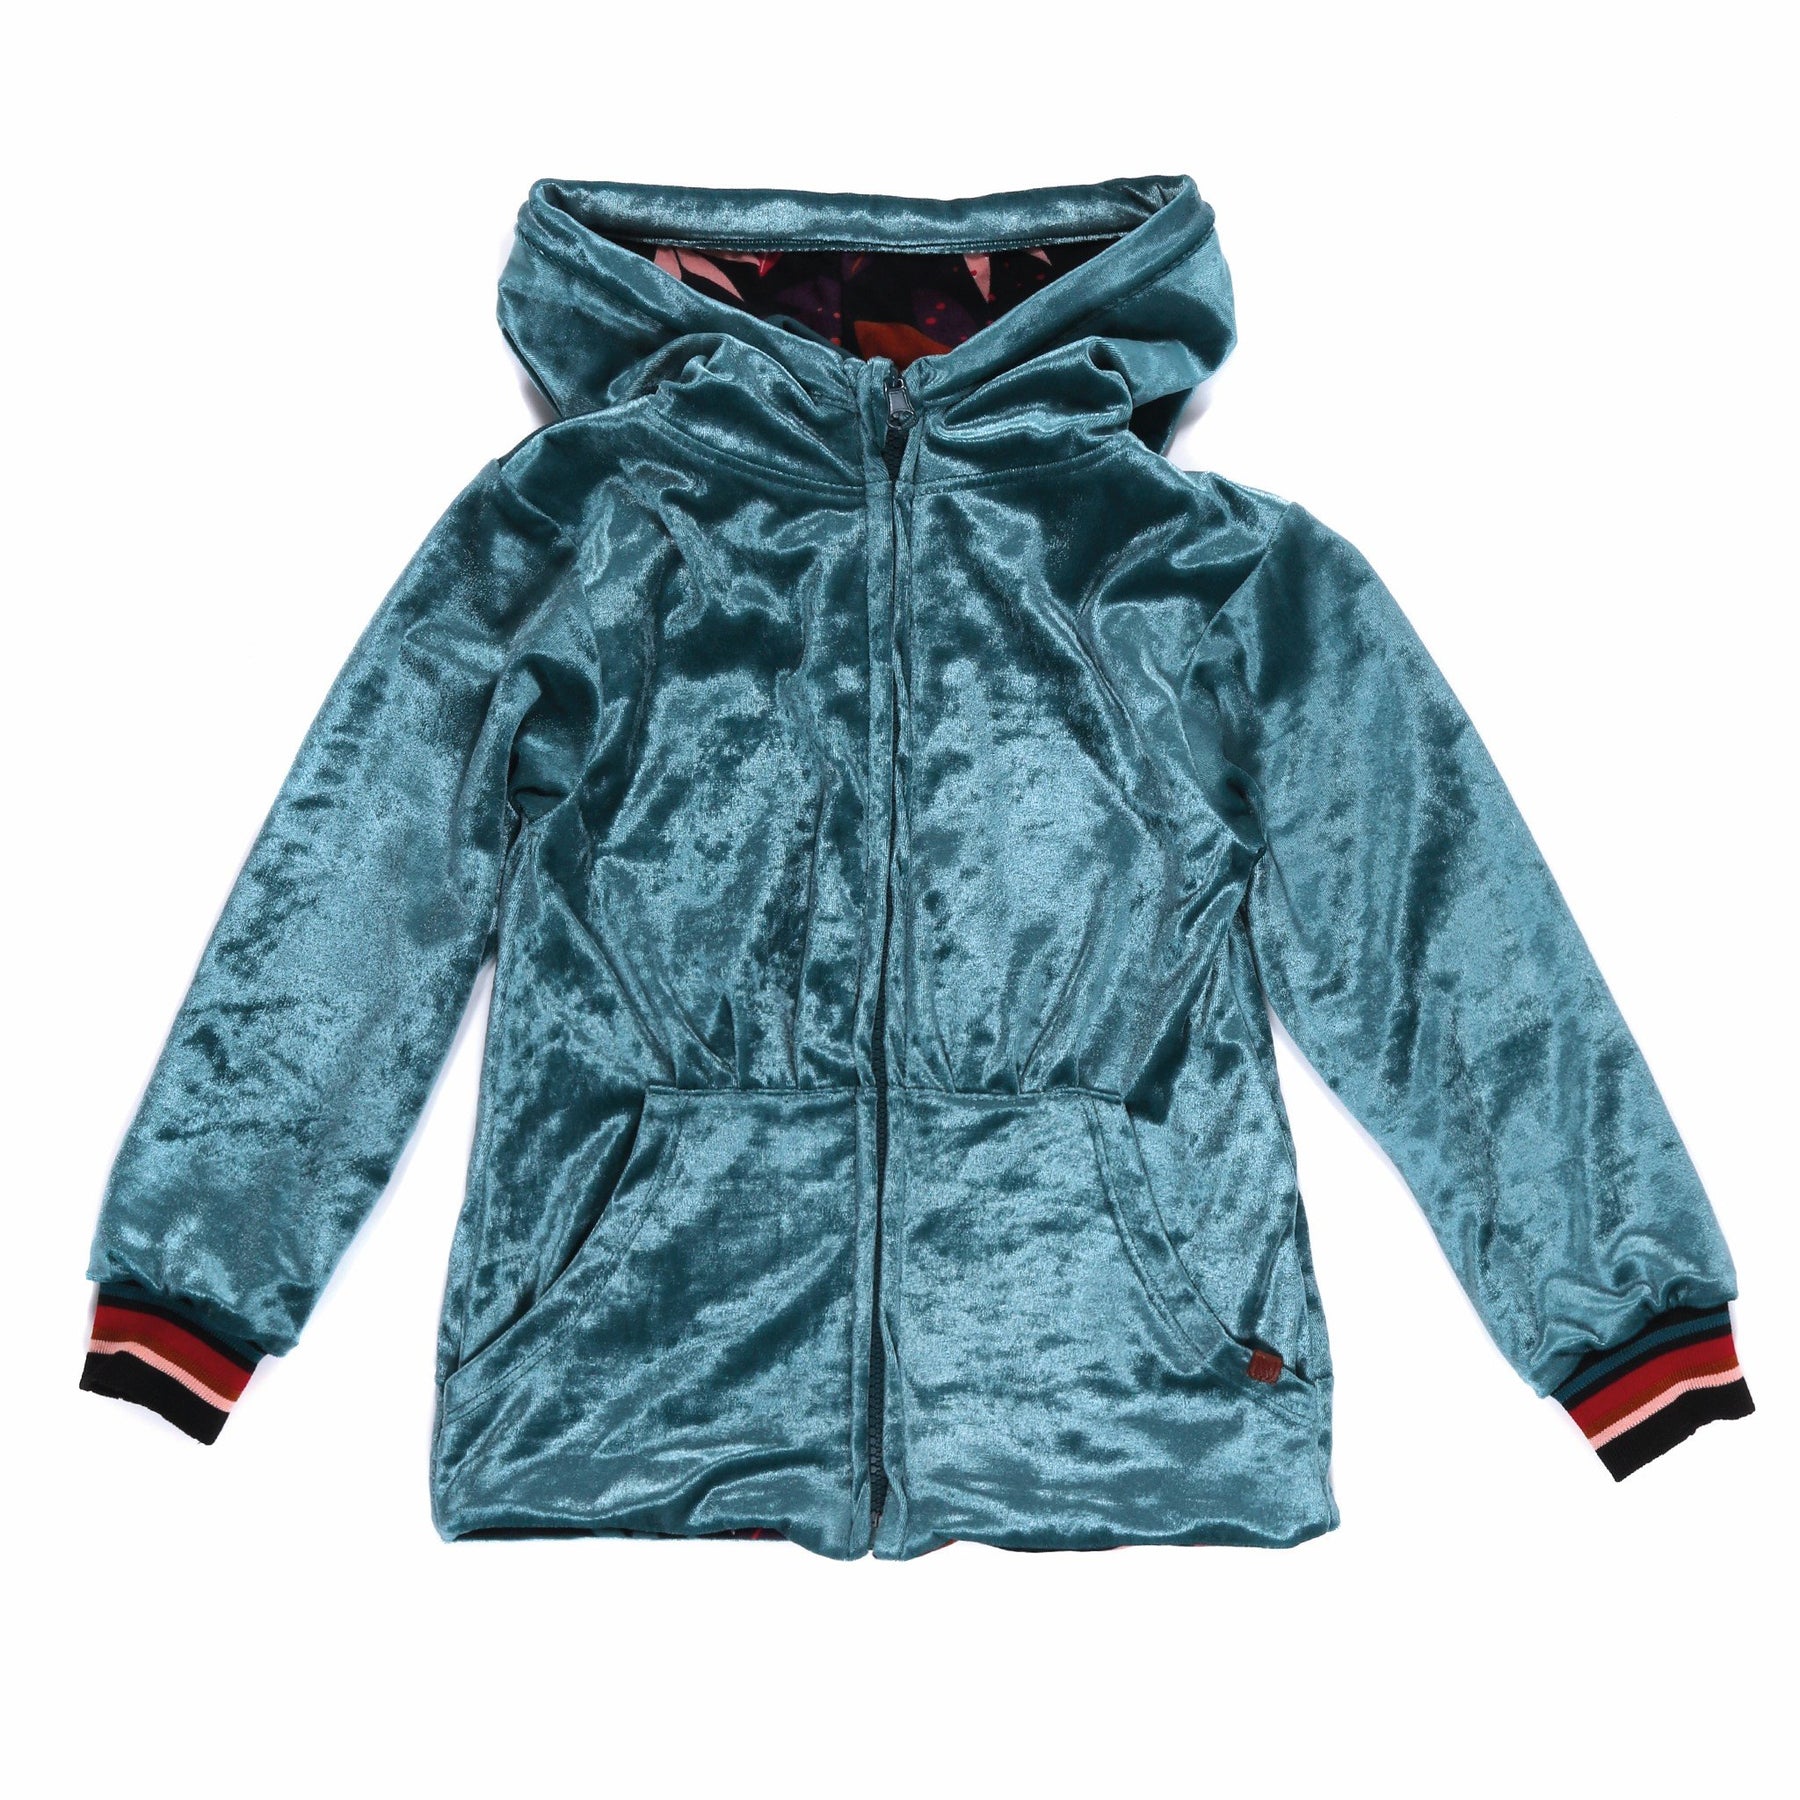 Veste réversible à capuchon Nanö - F2104-09-2 Turquoise - Boutique Flos, vêtements pour bébés et enfants